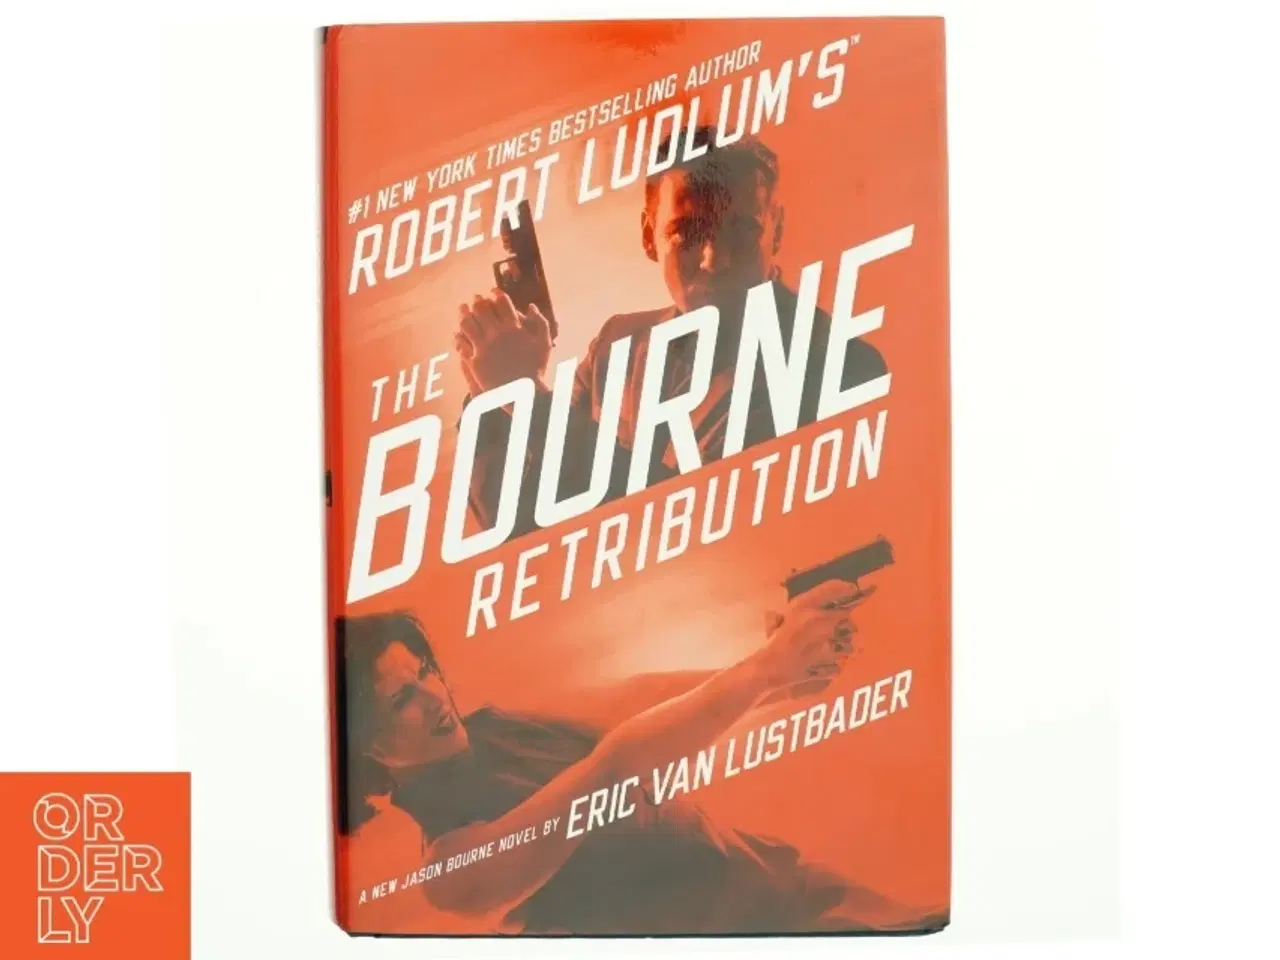 Billede 1 - Robert Ludlum's The Bourne retribution : a new Jason Bourne novel af Eric Van Lustbader (Bog)